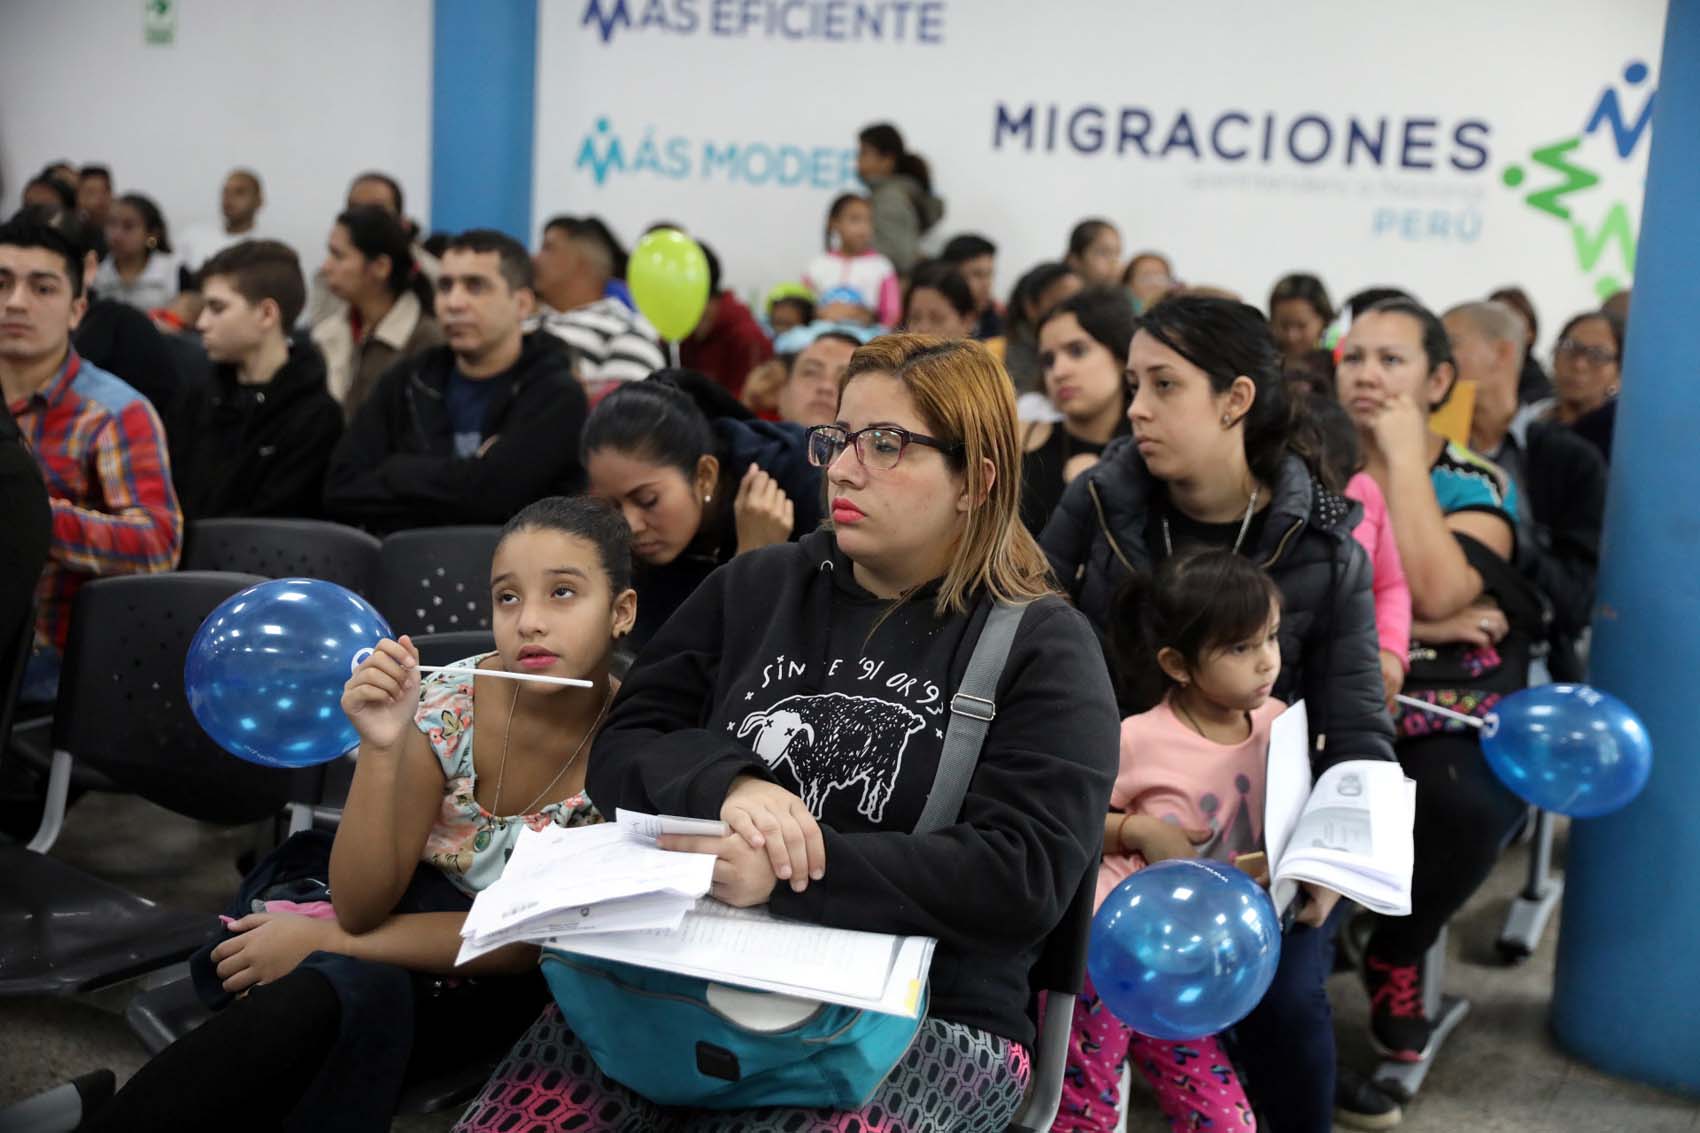 Perú ha tomado soluciones legales rápidas para atender a más de 700 mil venezolanos, dice Migración